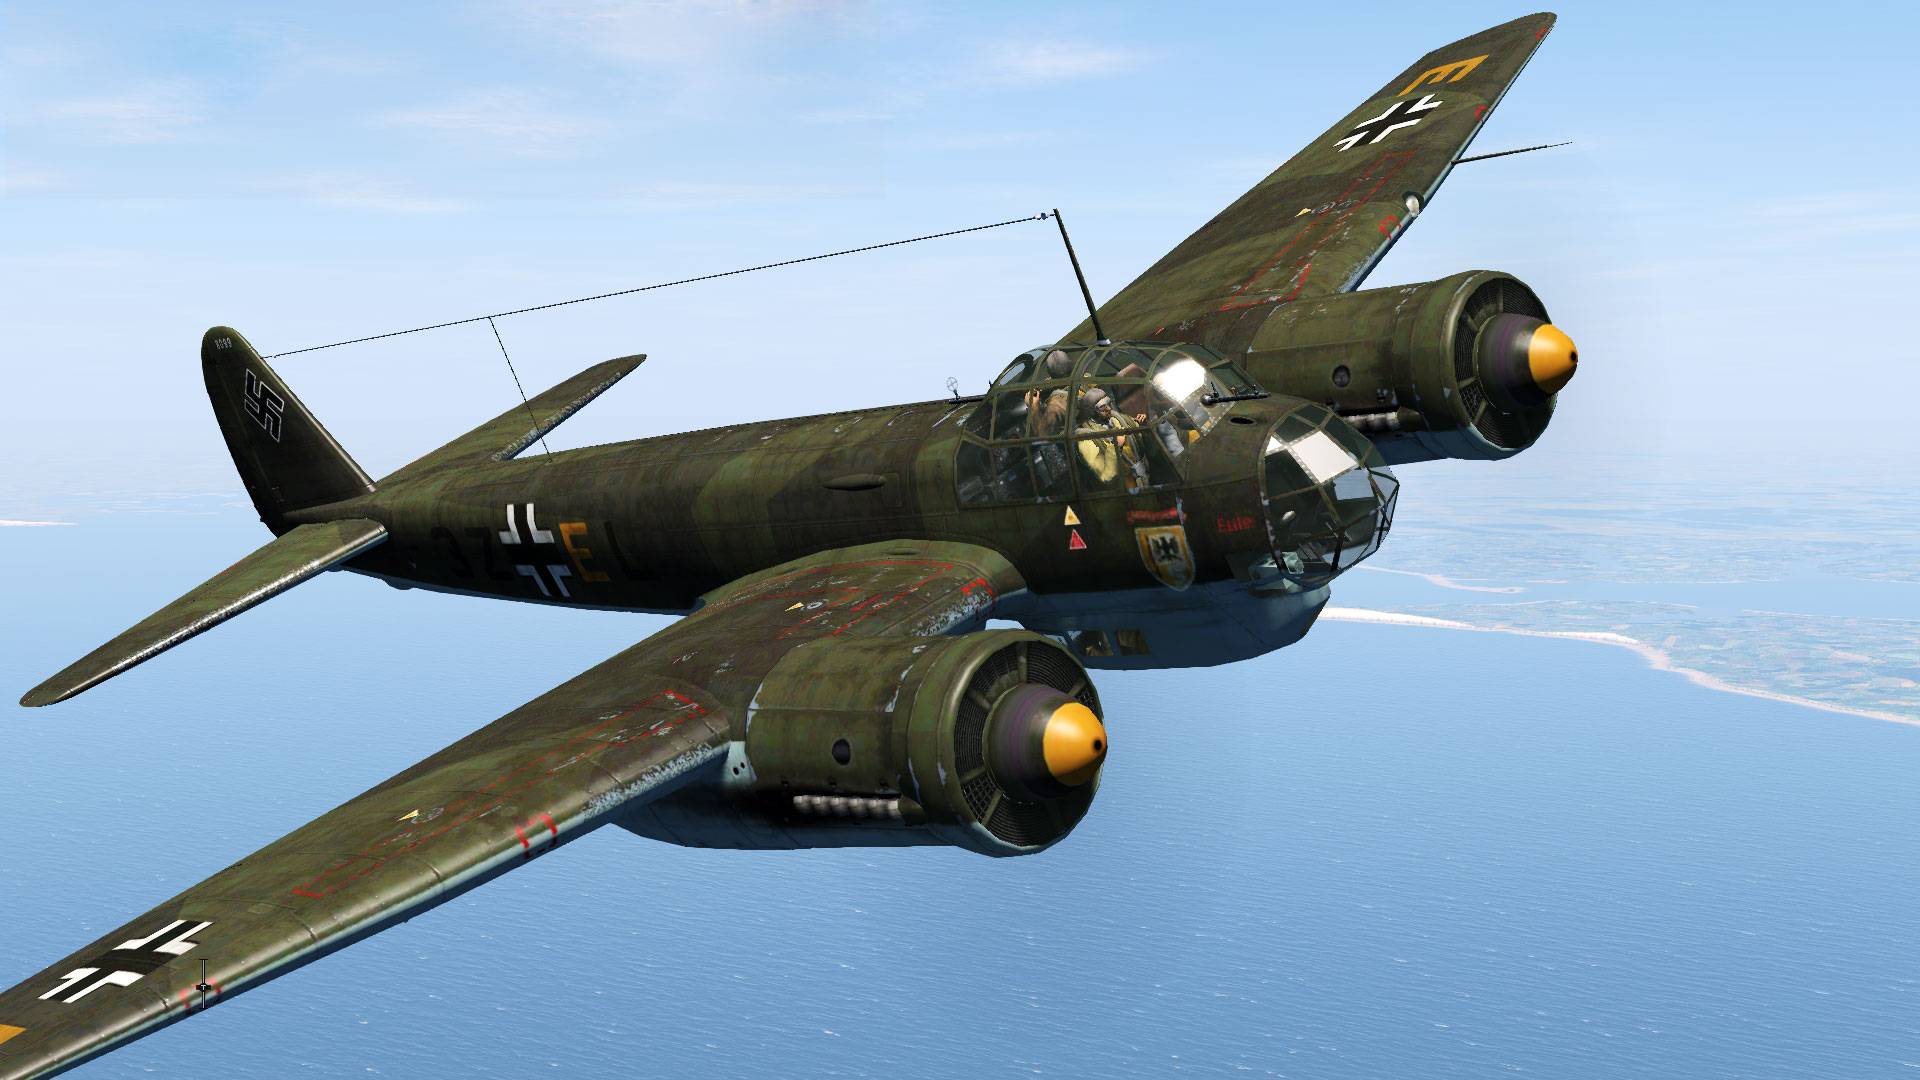 Самолет-бомбардировщик «юнкерс» ju-88 - варианты ju-88 - ju 88g-6b, s-1,  c-4, a-4  - самолеты германии - люфтваффе